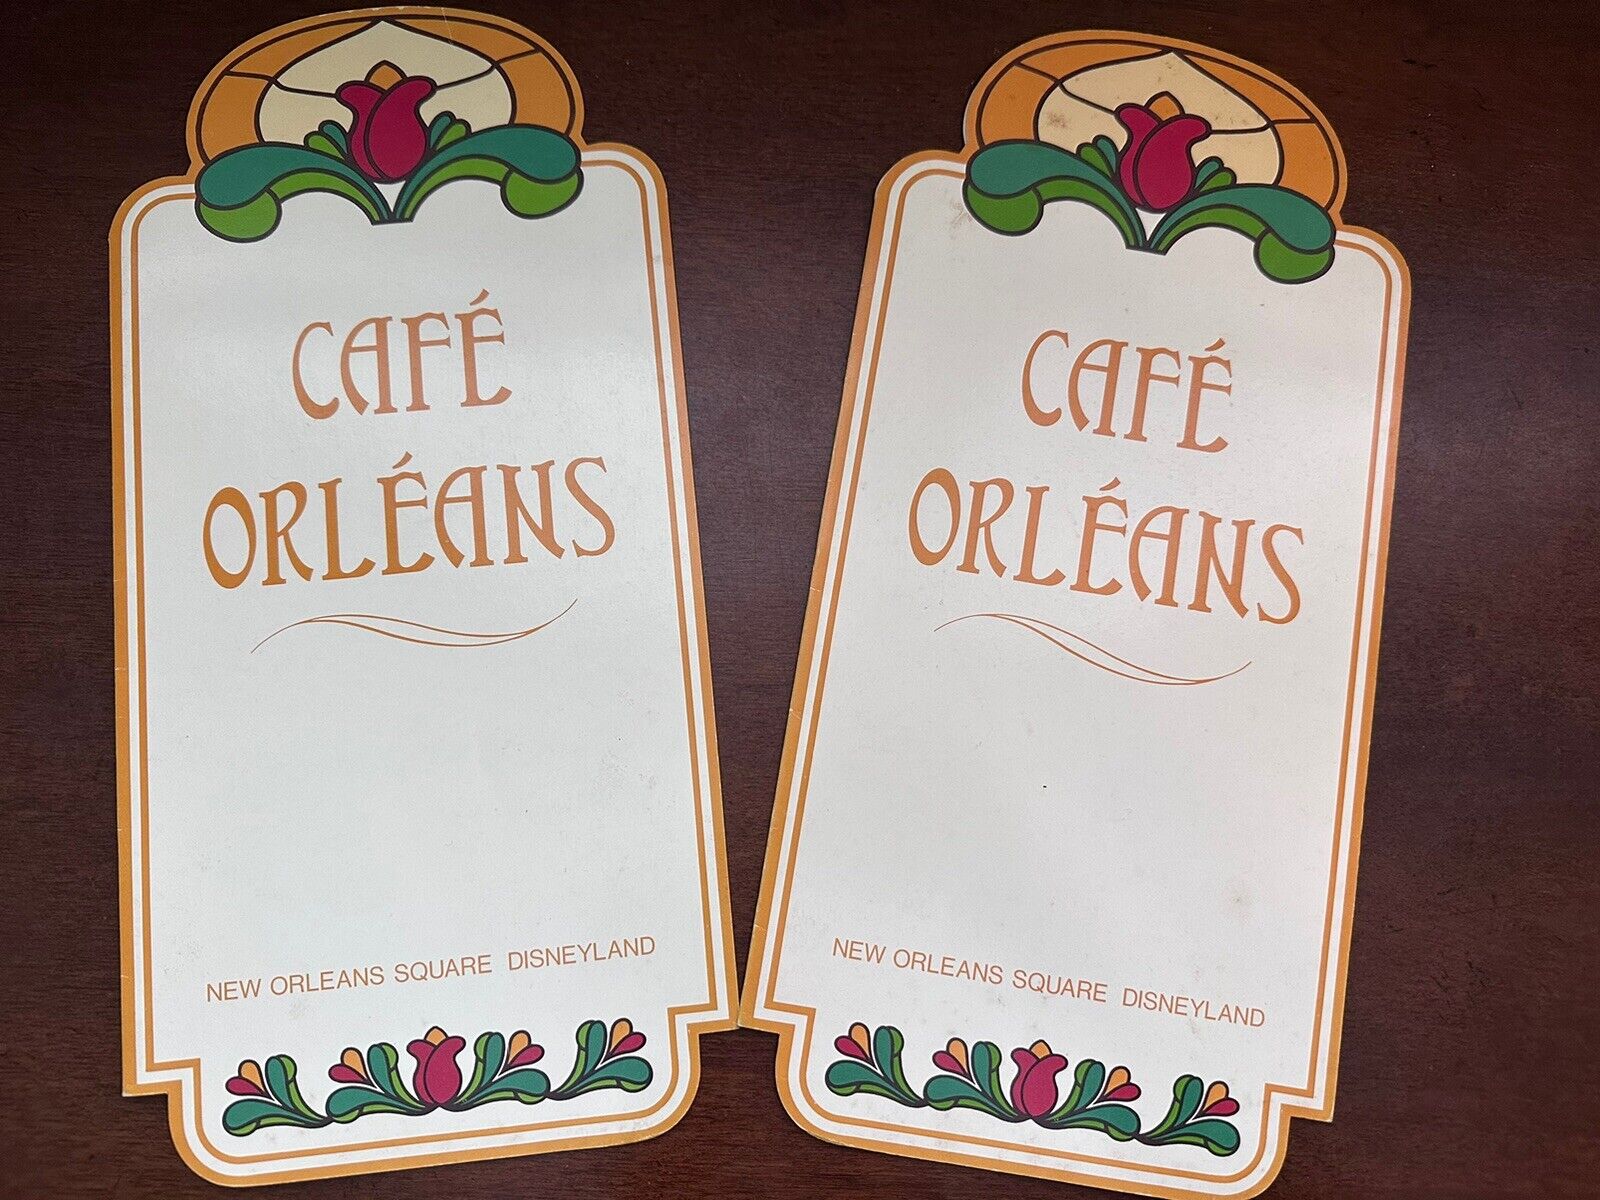 Disneyland Cafe Orleans Menus Vintage